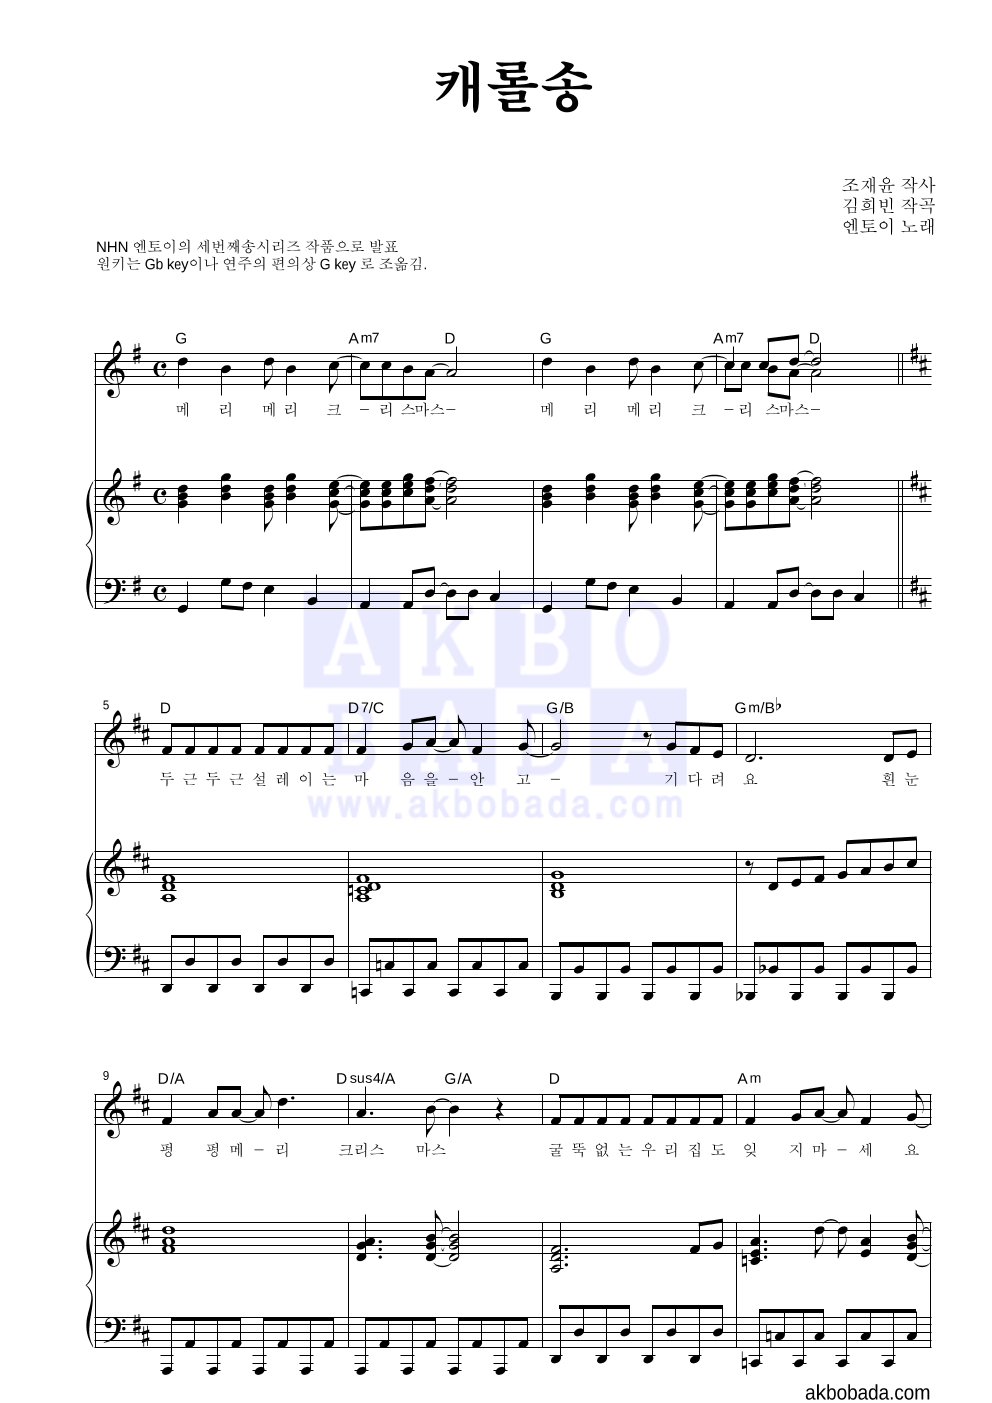 엔토이 - 캐롤송 피아노 3단 악보 